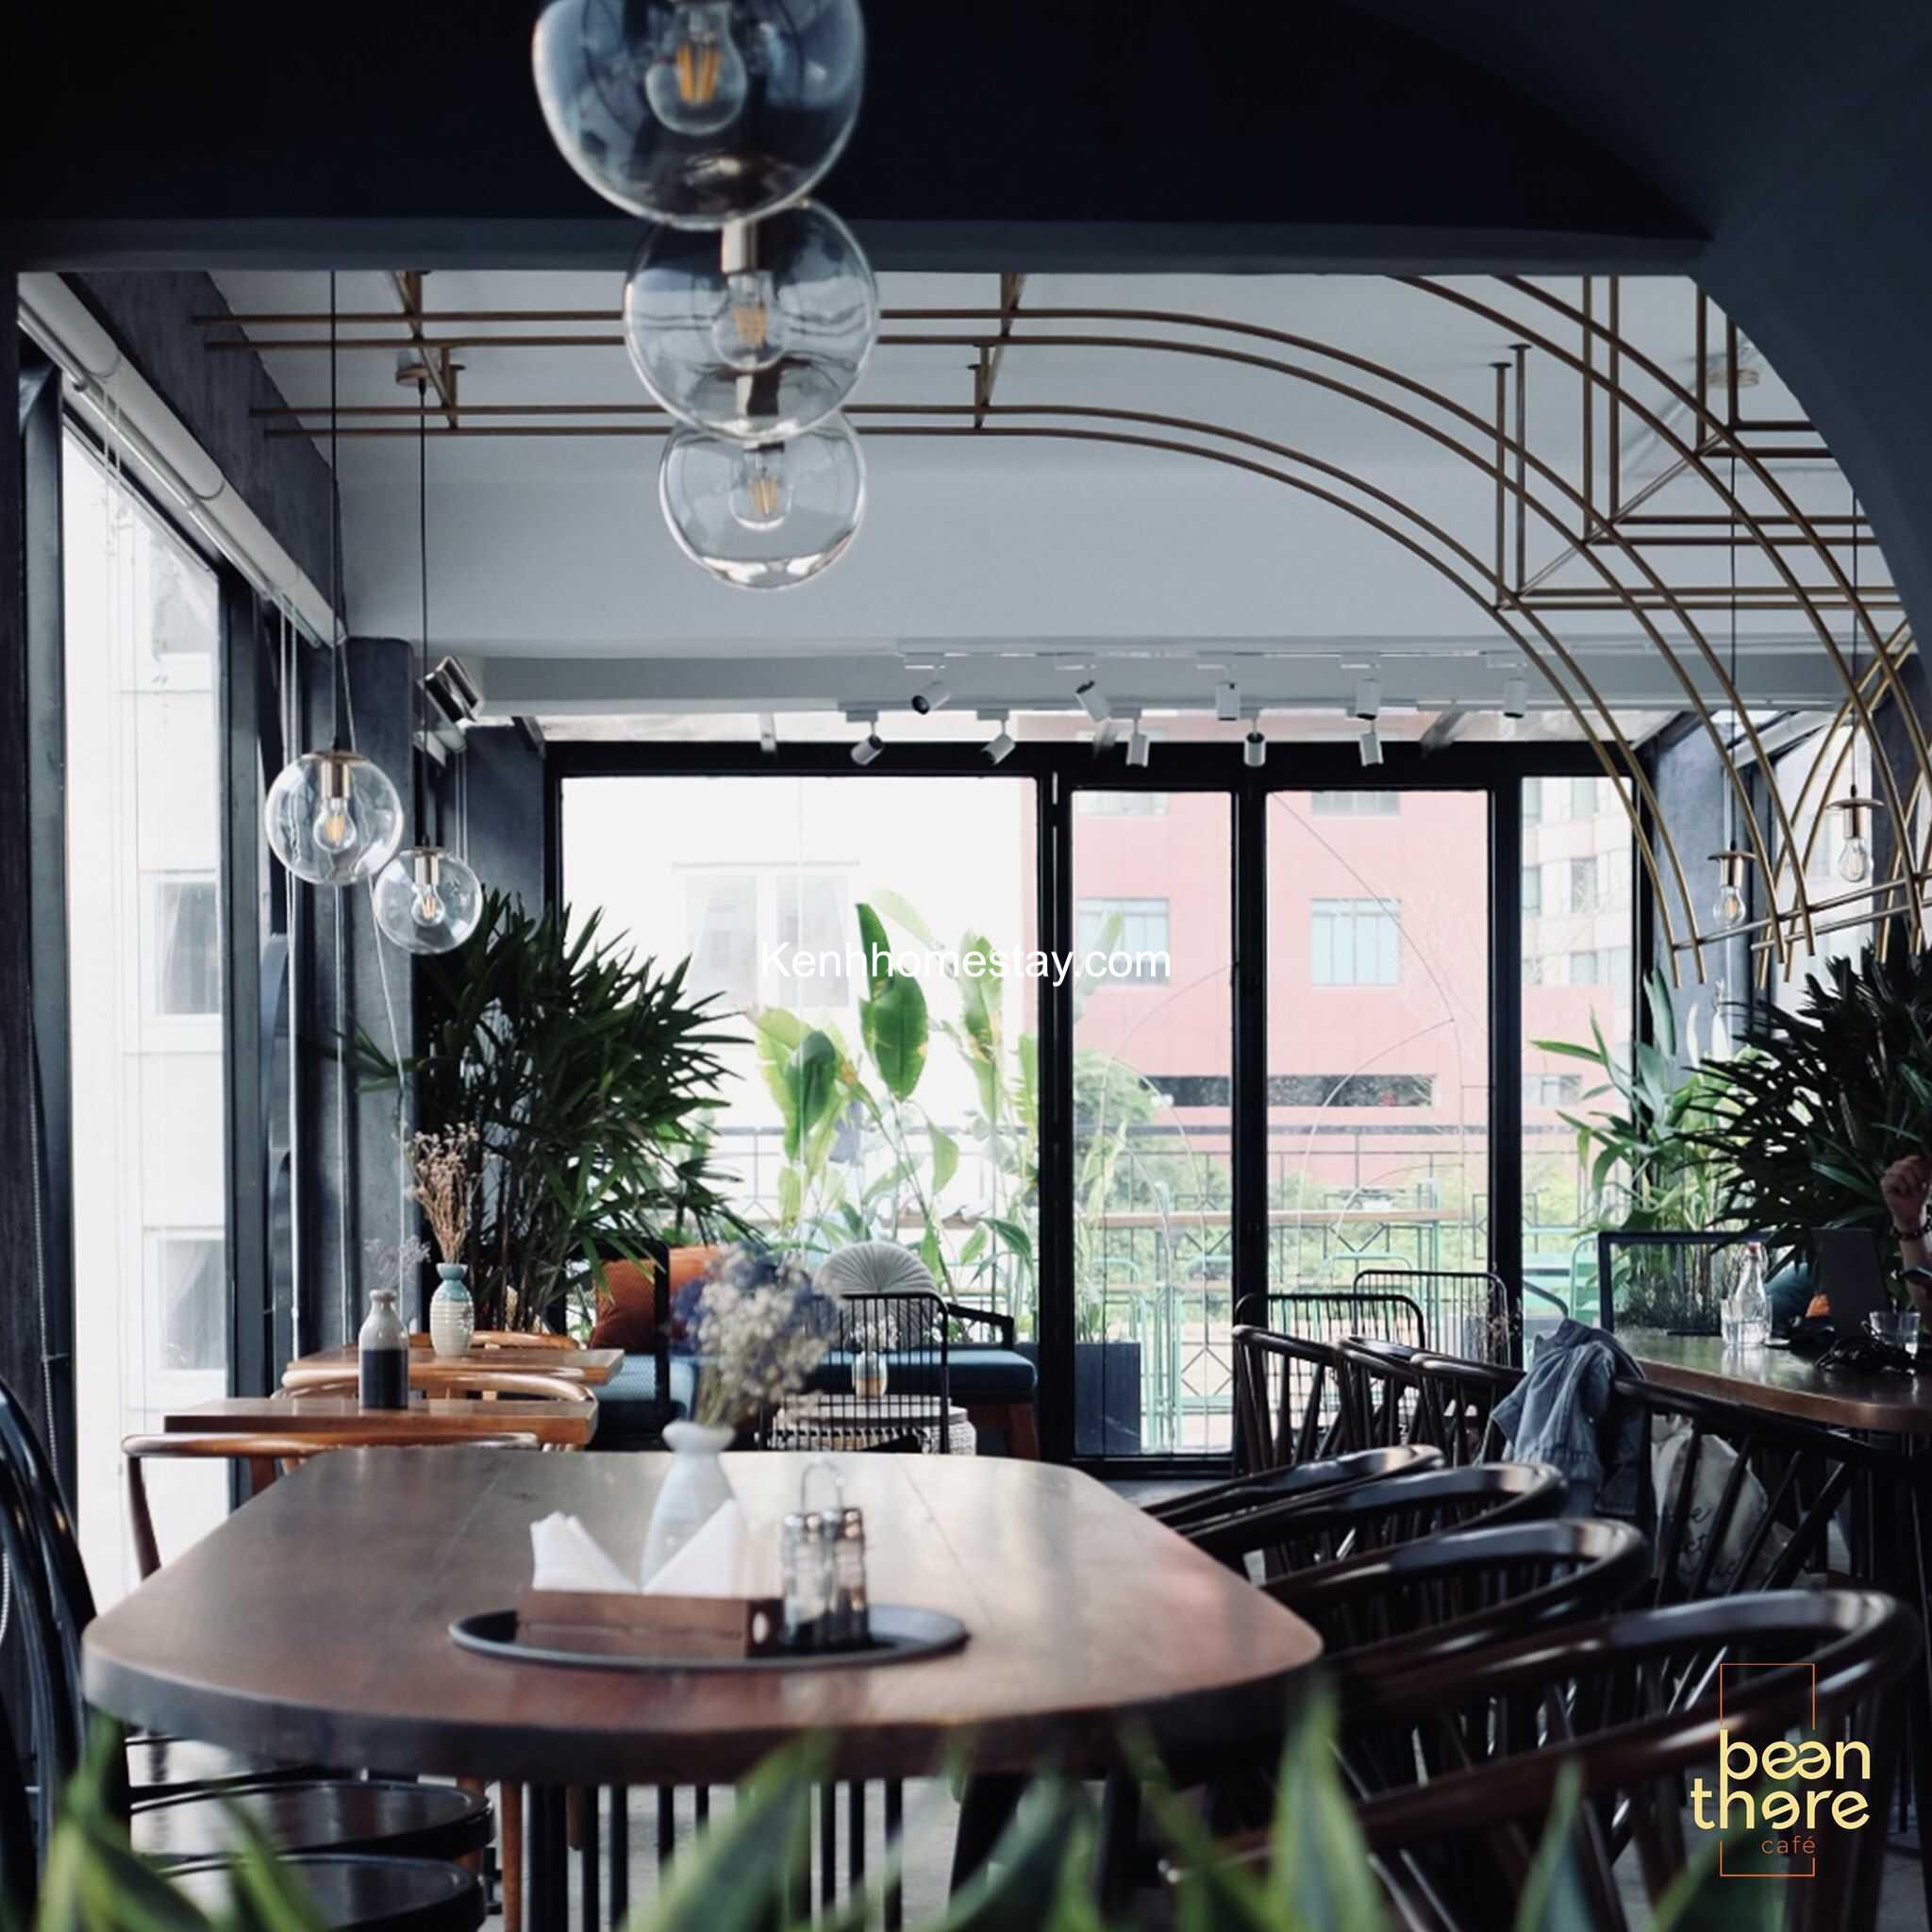 Top 15 Quán cafe sân thượng view đẹp ở Sài Gòn – TPHCM đáng đi nhất 